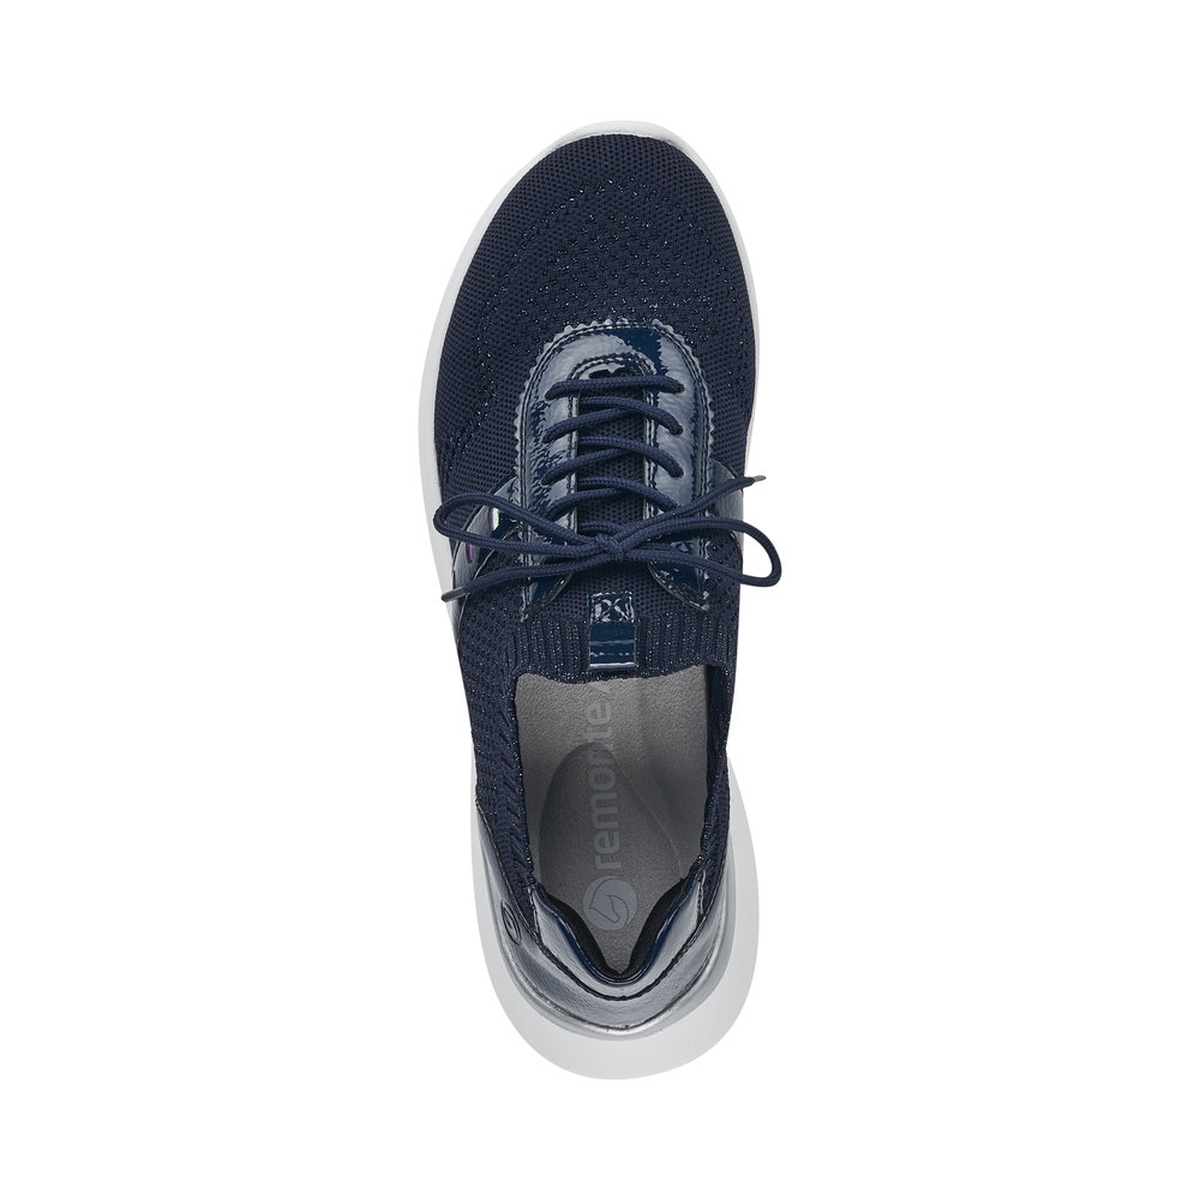 Remonte Sneaker - Dark blue Textile